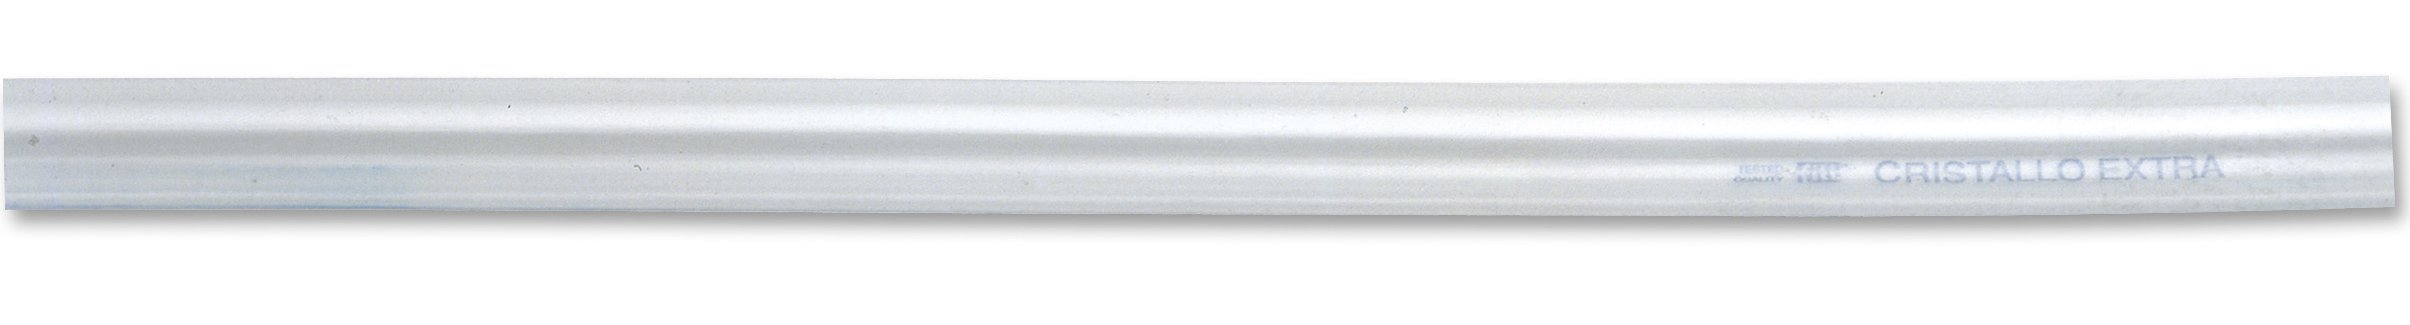 Chapuis BTC4 Kristall-Schlauch, einlagig, PVC-Kunststoff, Innendurchmesser: 4 mm, Außendurchmesser: 6 mm, Spule: 120 m, transparent